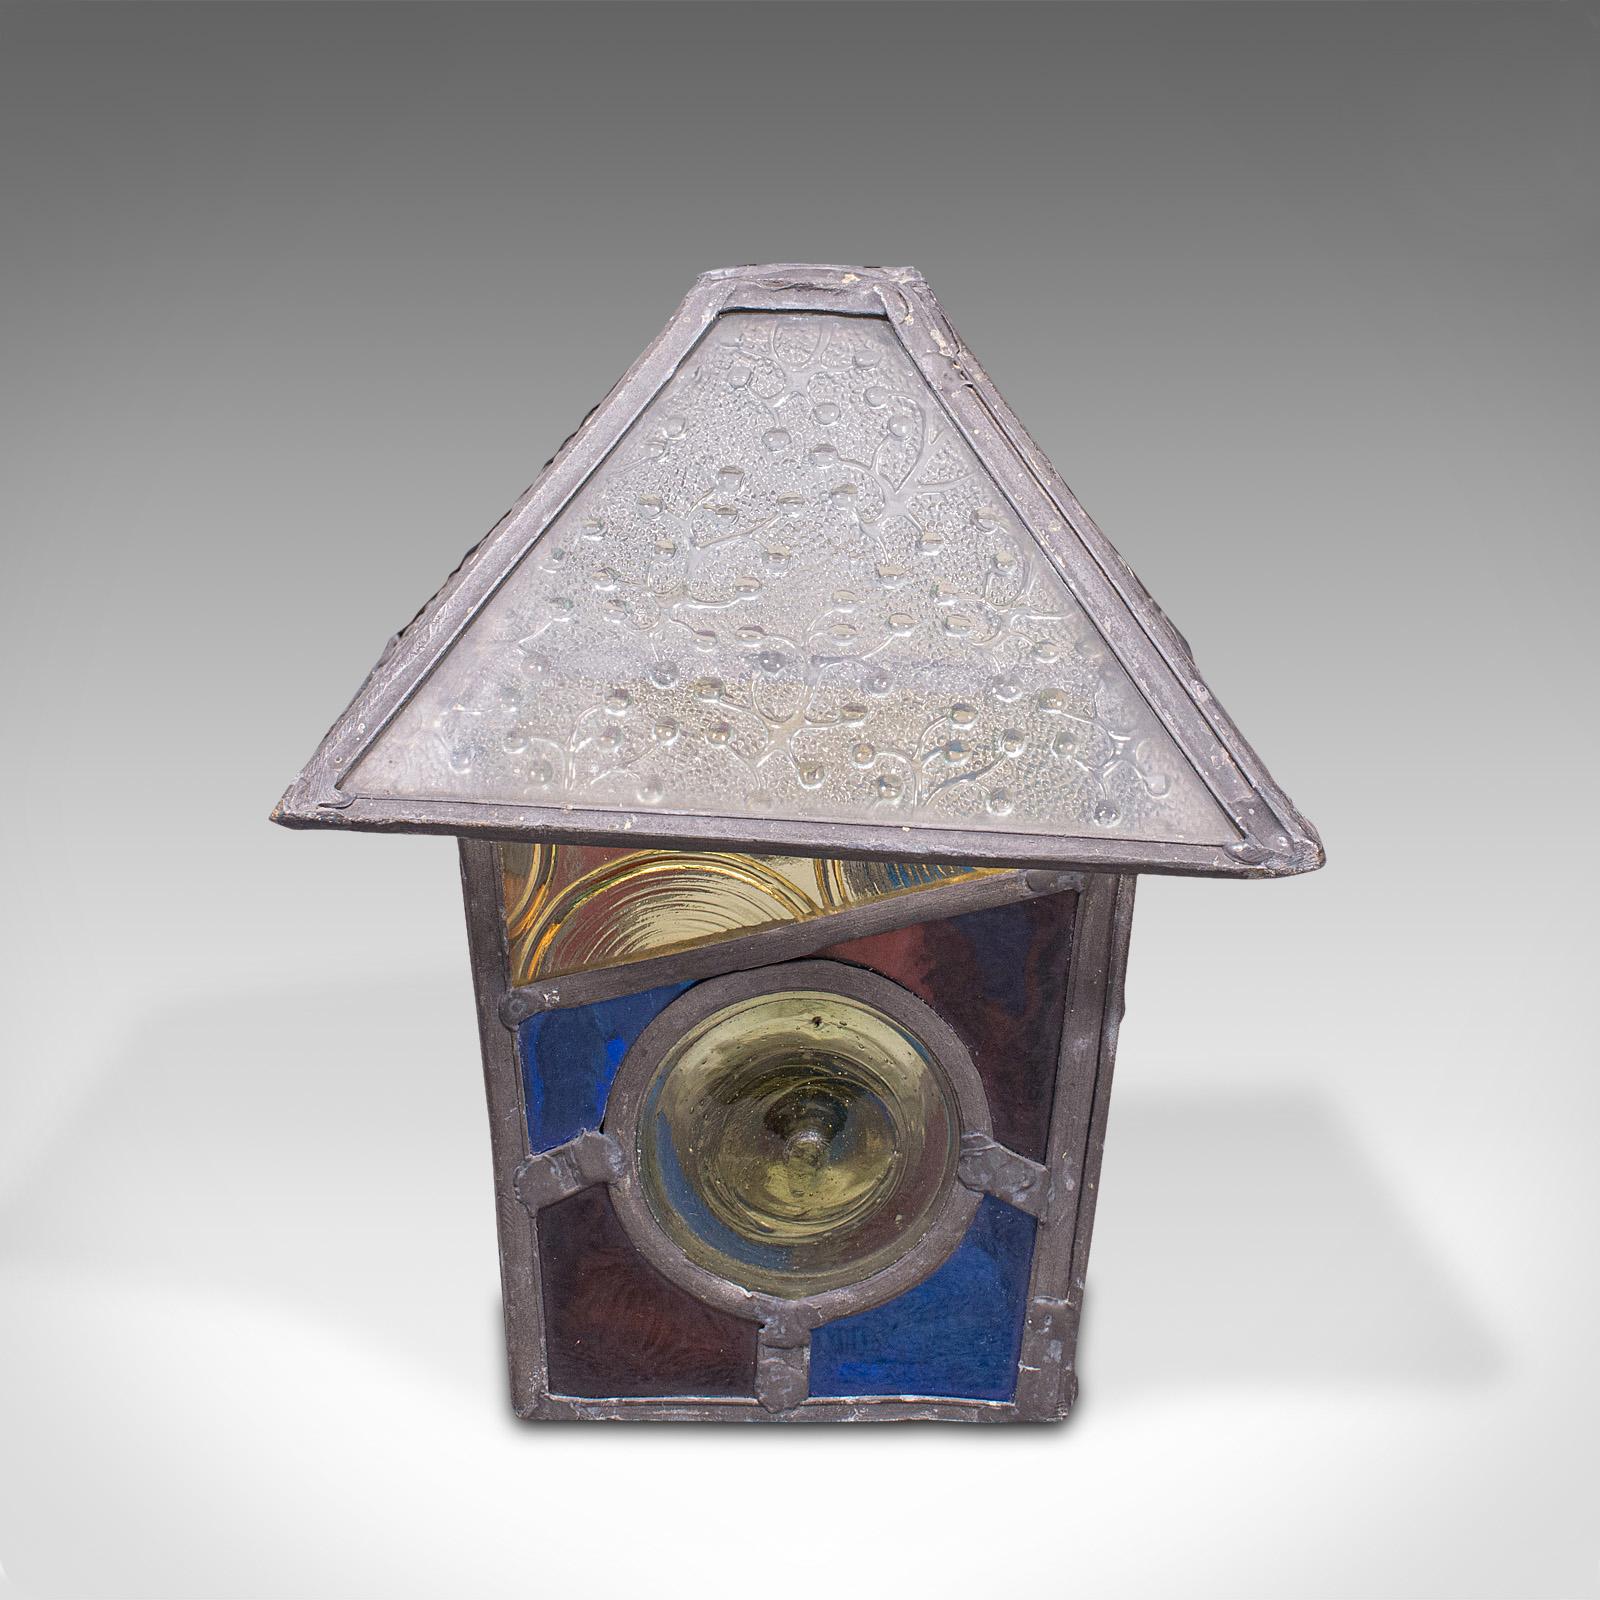 Dies ist eine antike dekorative Laternenhaube. Ein englischer Lampenschirm aus Buntglas und Blei, aus der viktorianischen Zeit, um 1900.

Wunderschöne Farbe und zeitgemäßes Aussehen
Zeigt eine wünschenswerte gealterte Patina und in gutem